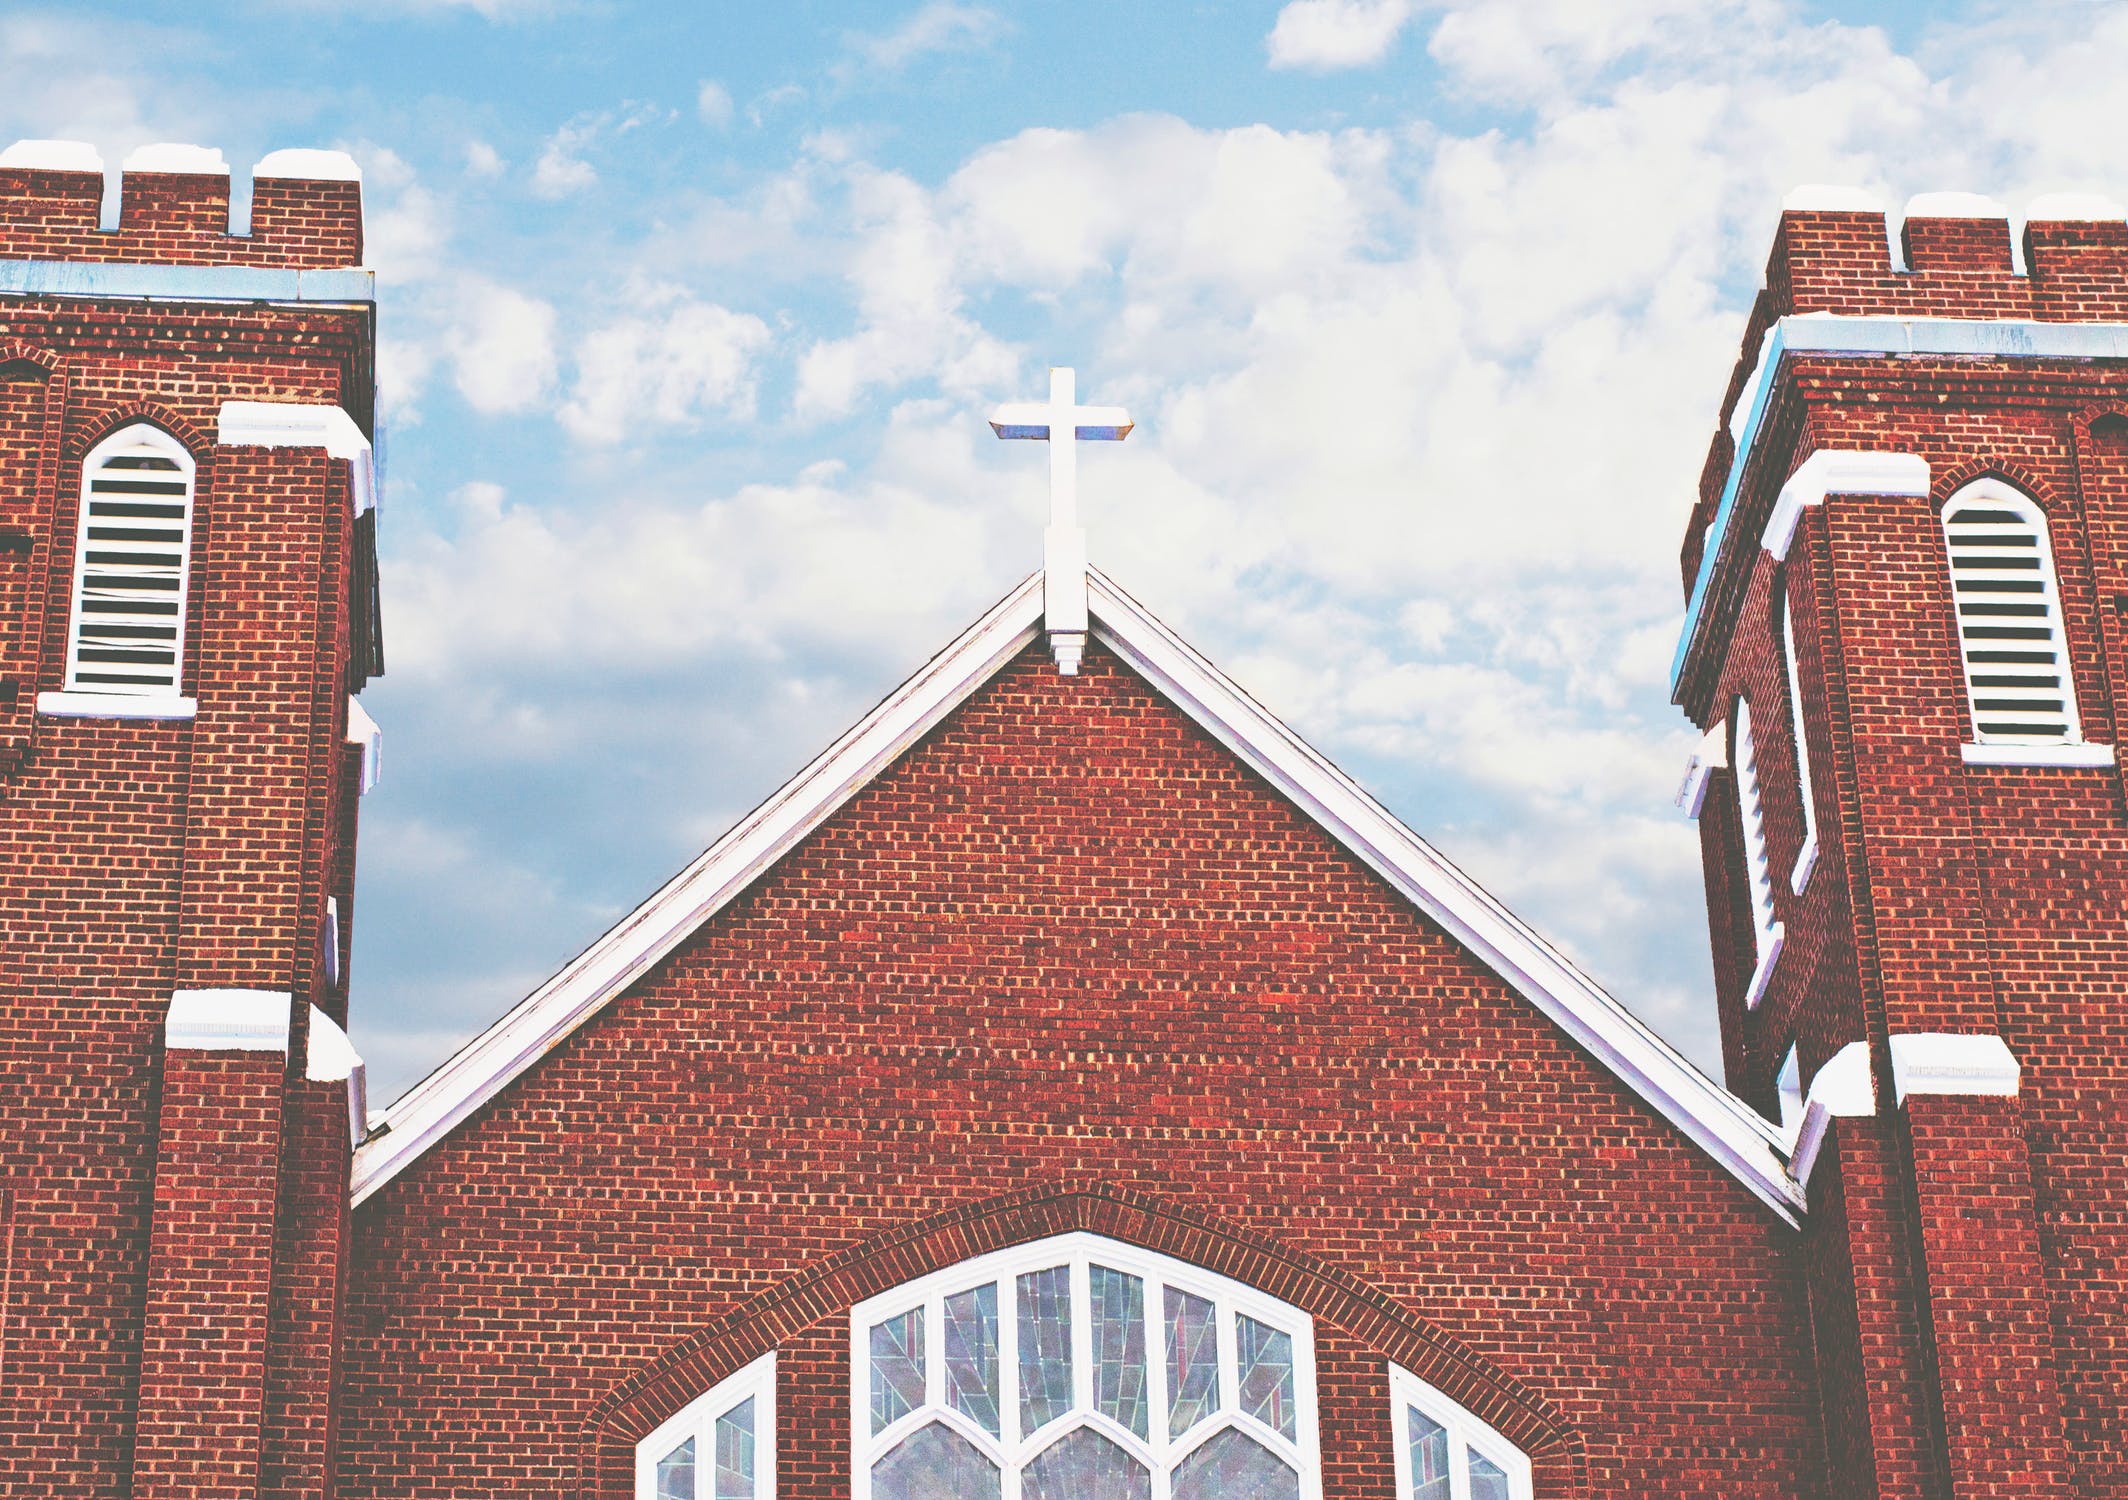 Kaip pasirinkti naują bažnyčią?